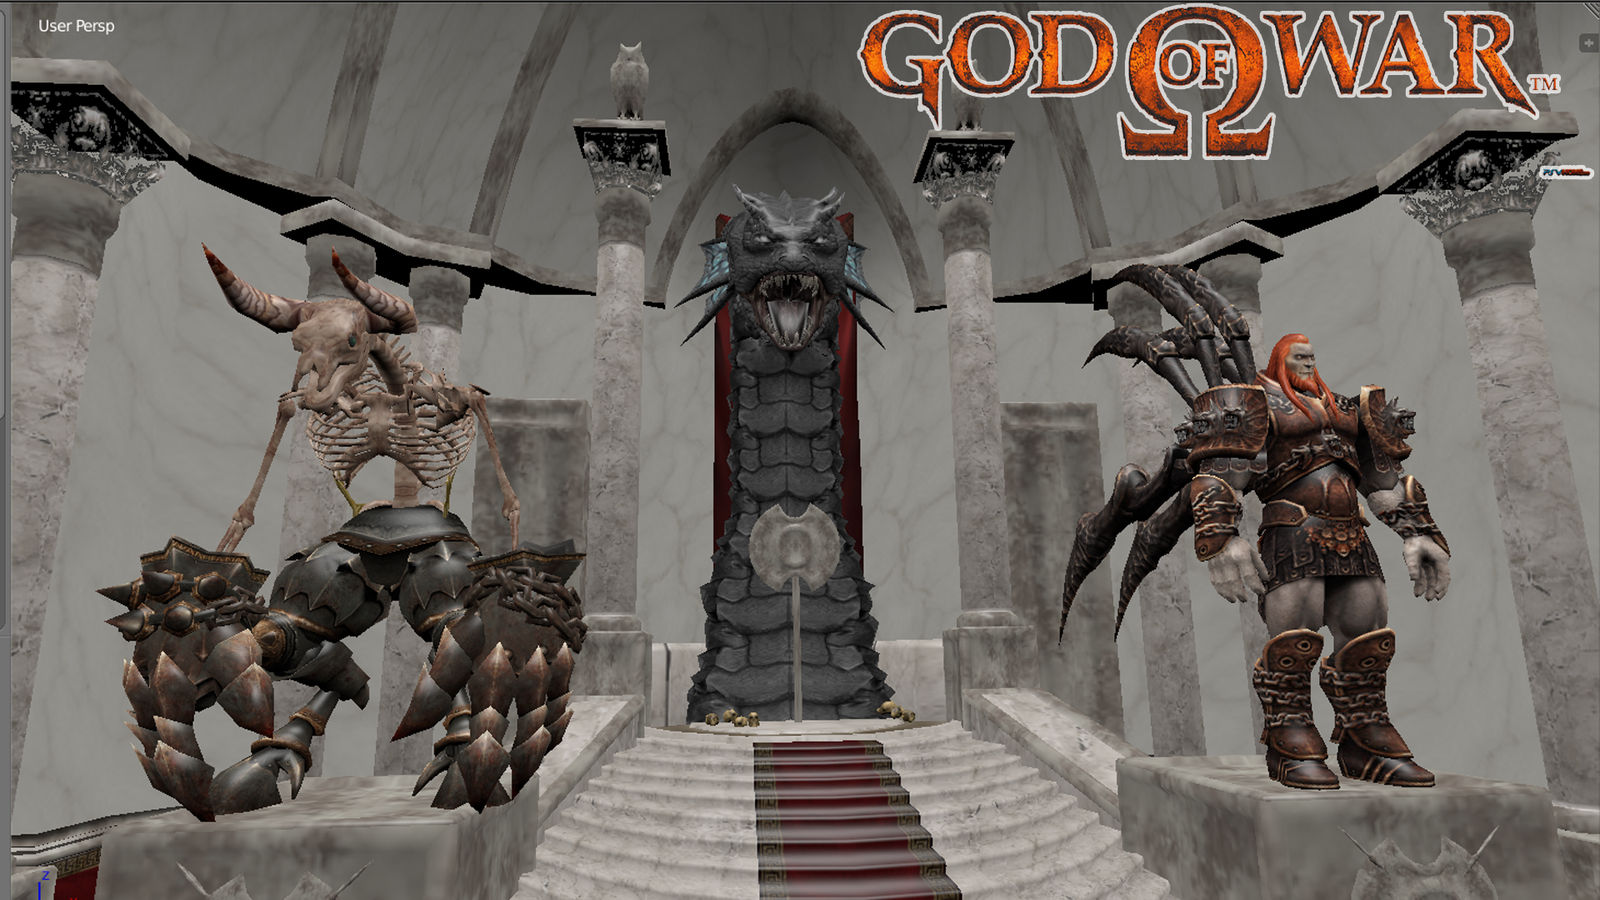  God of War (PS2)